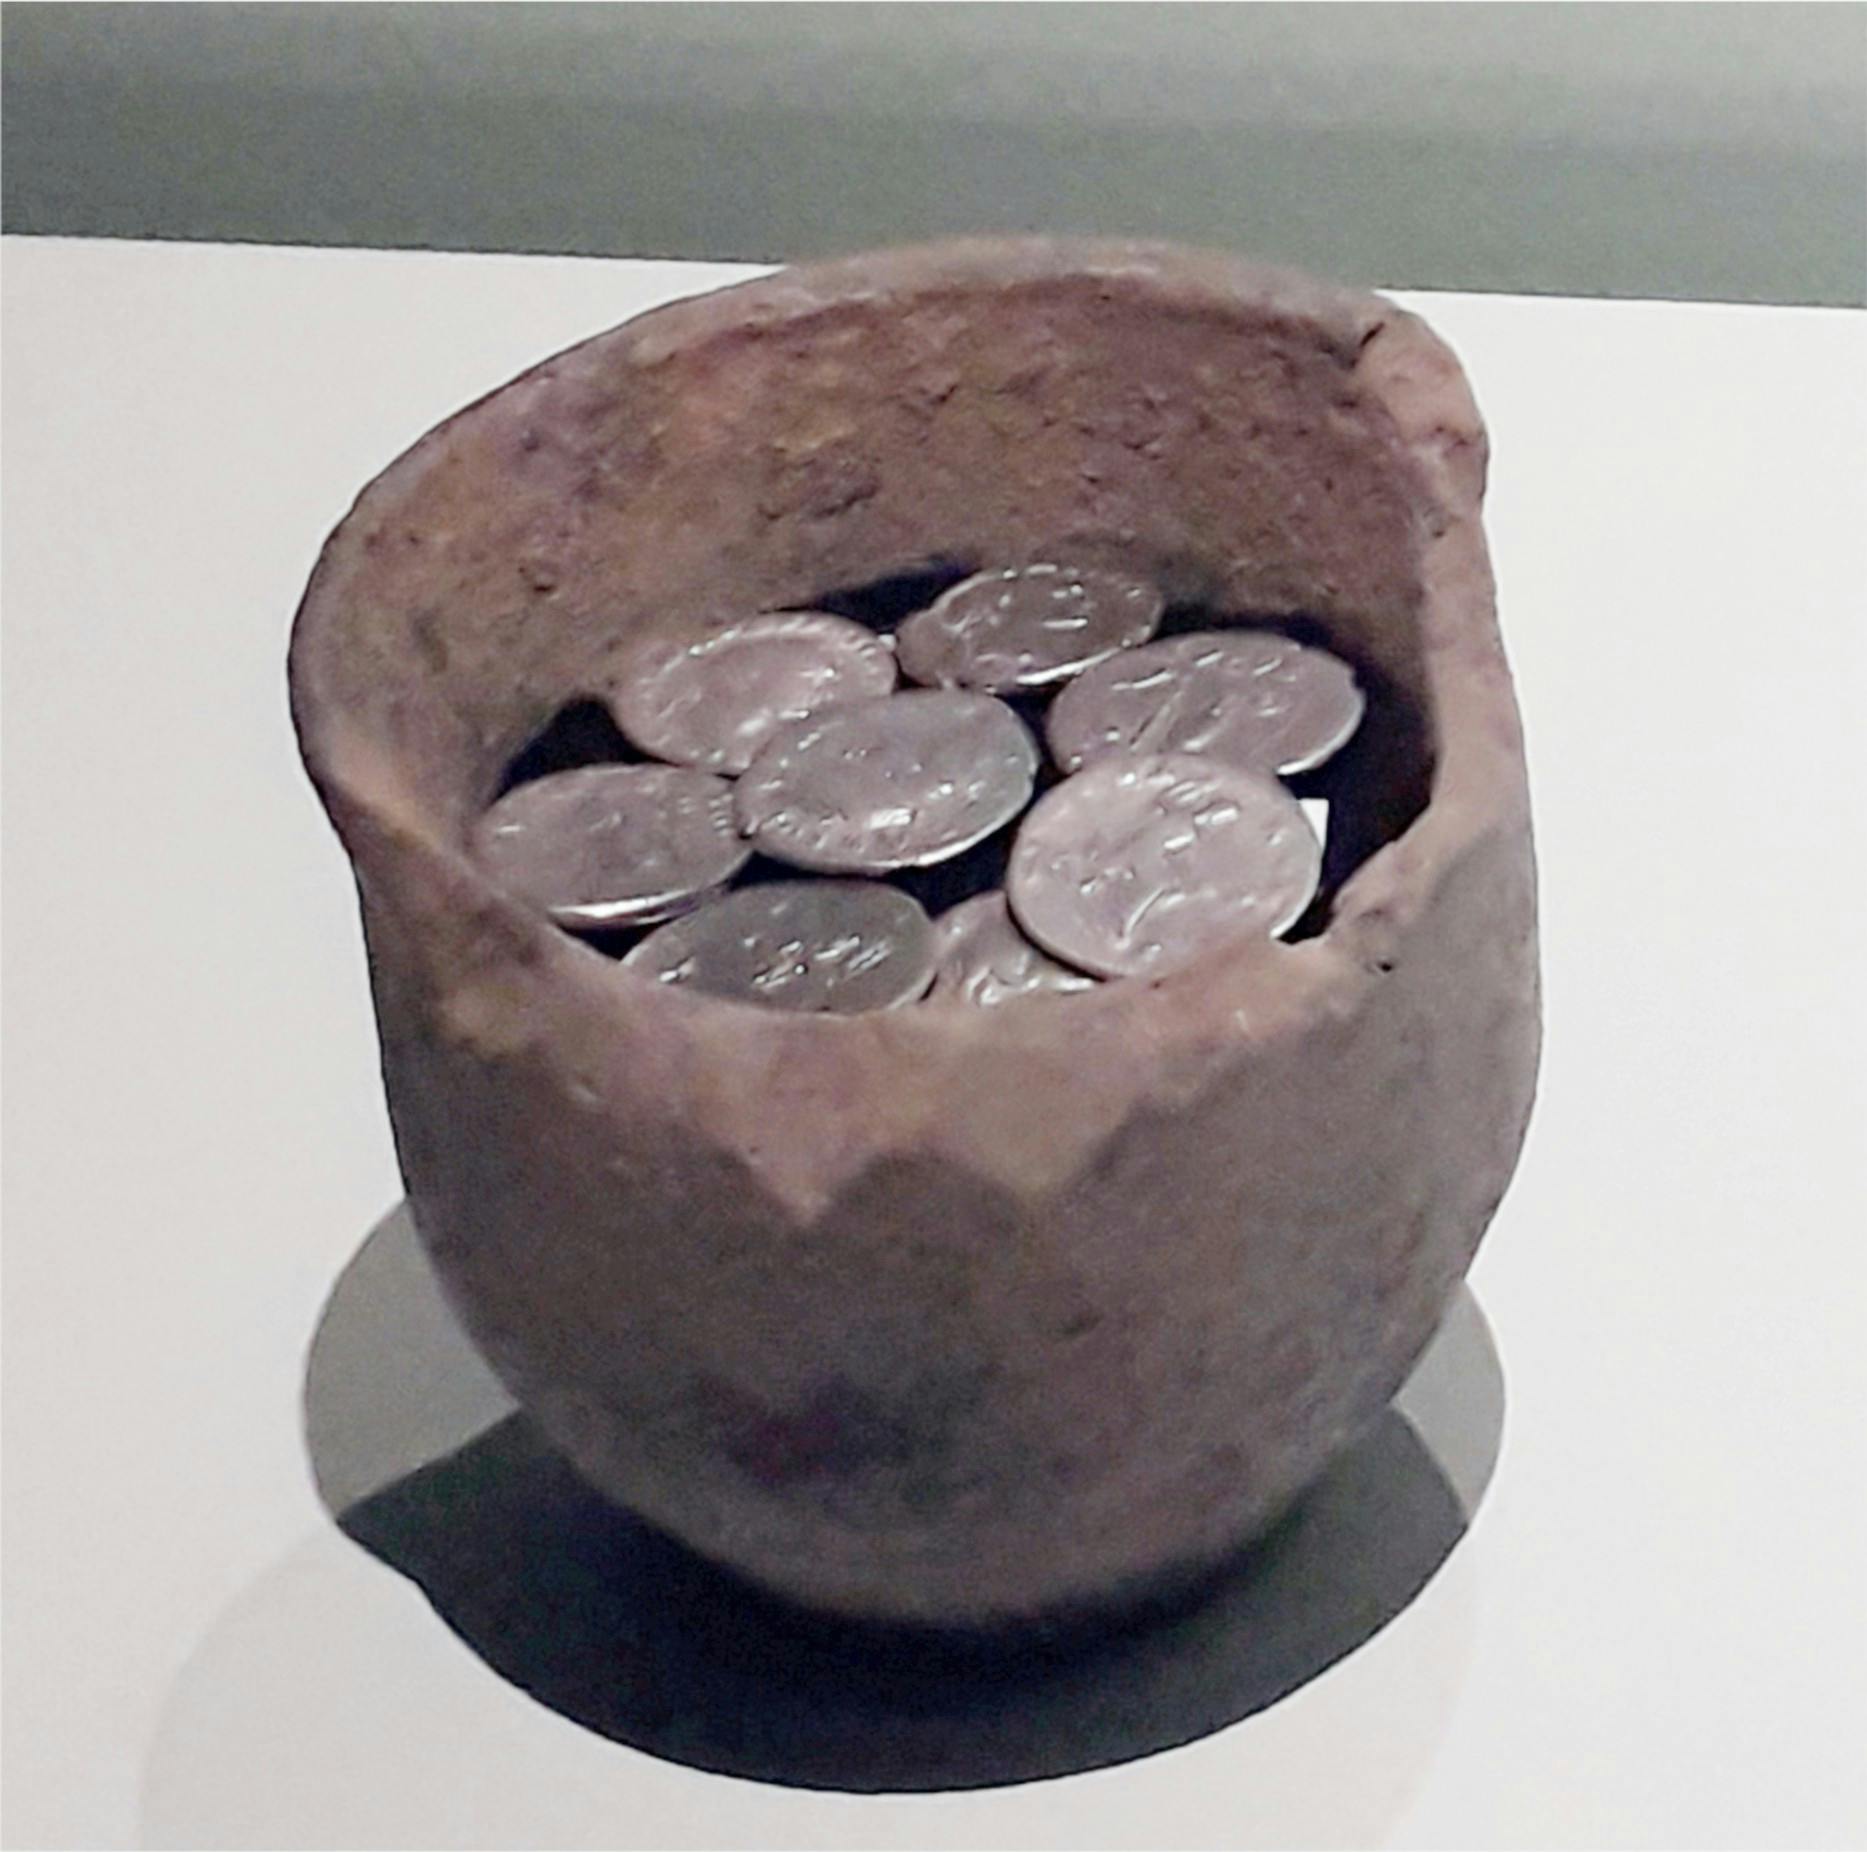 Romeinse munten